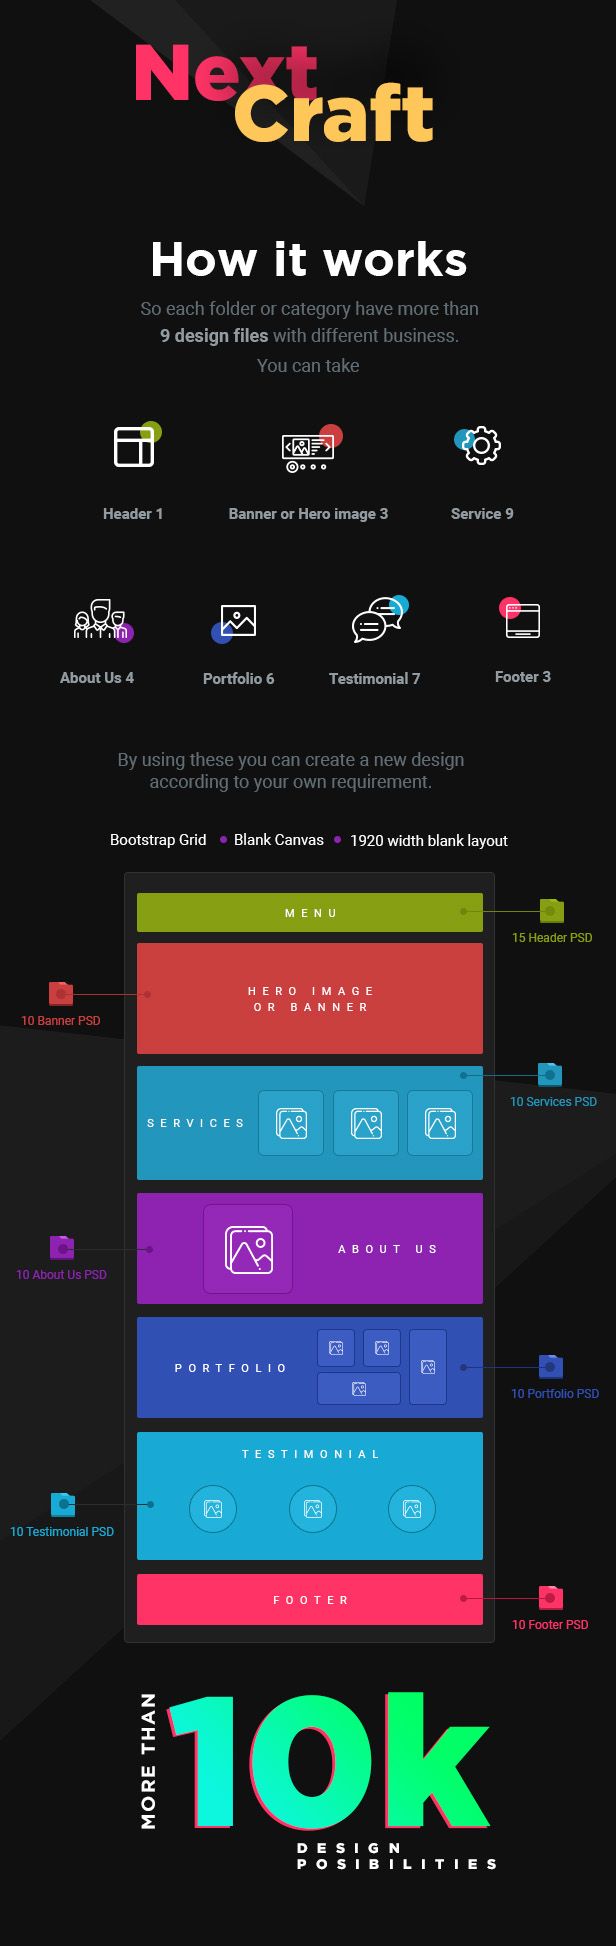 NexCraft | Modular PSD Template and Web UI Kit - 2